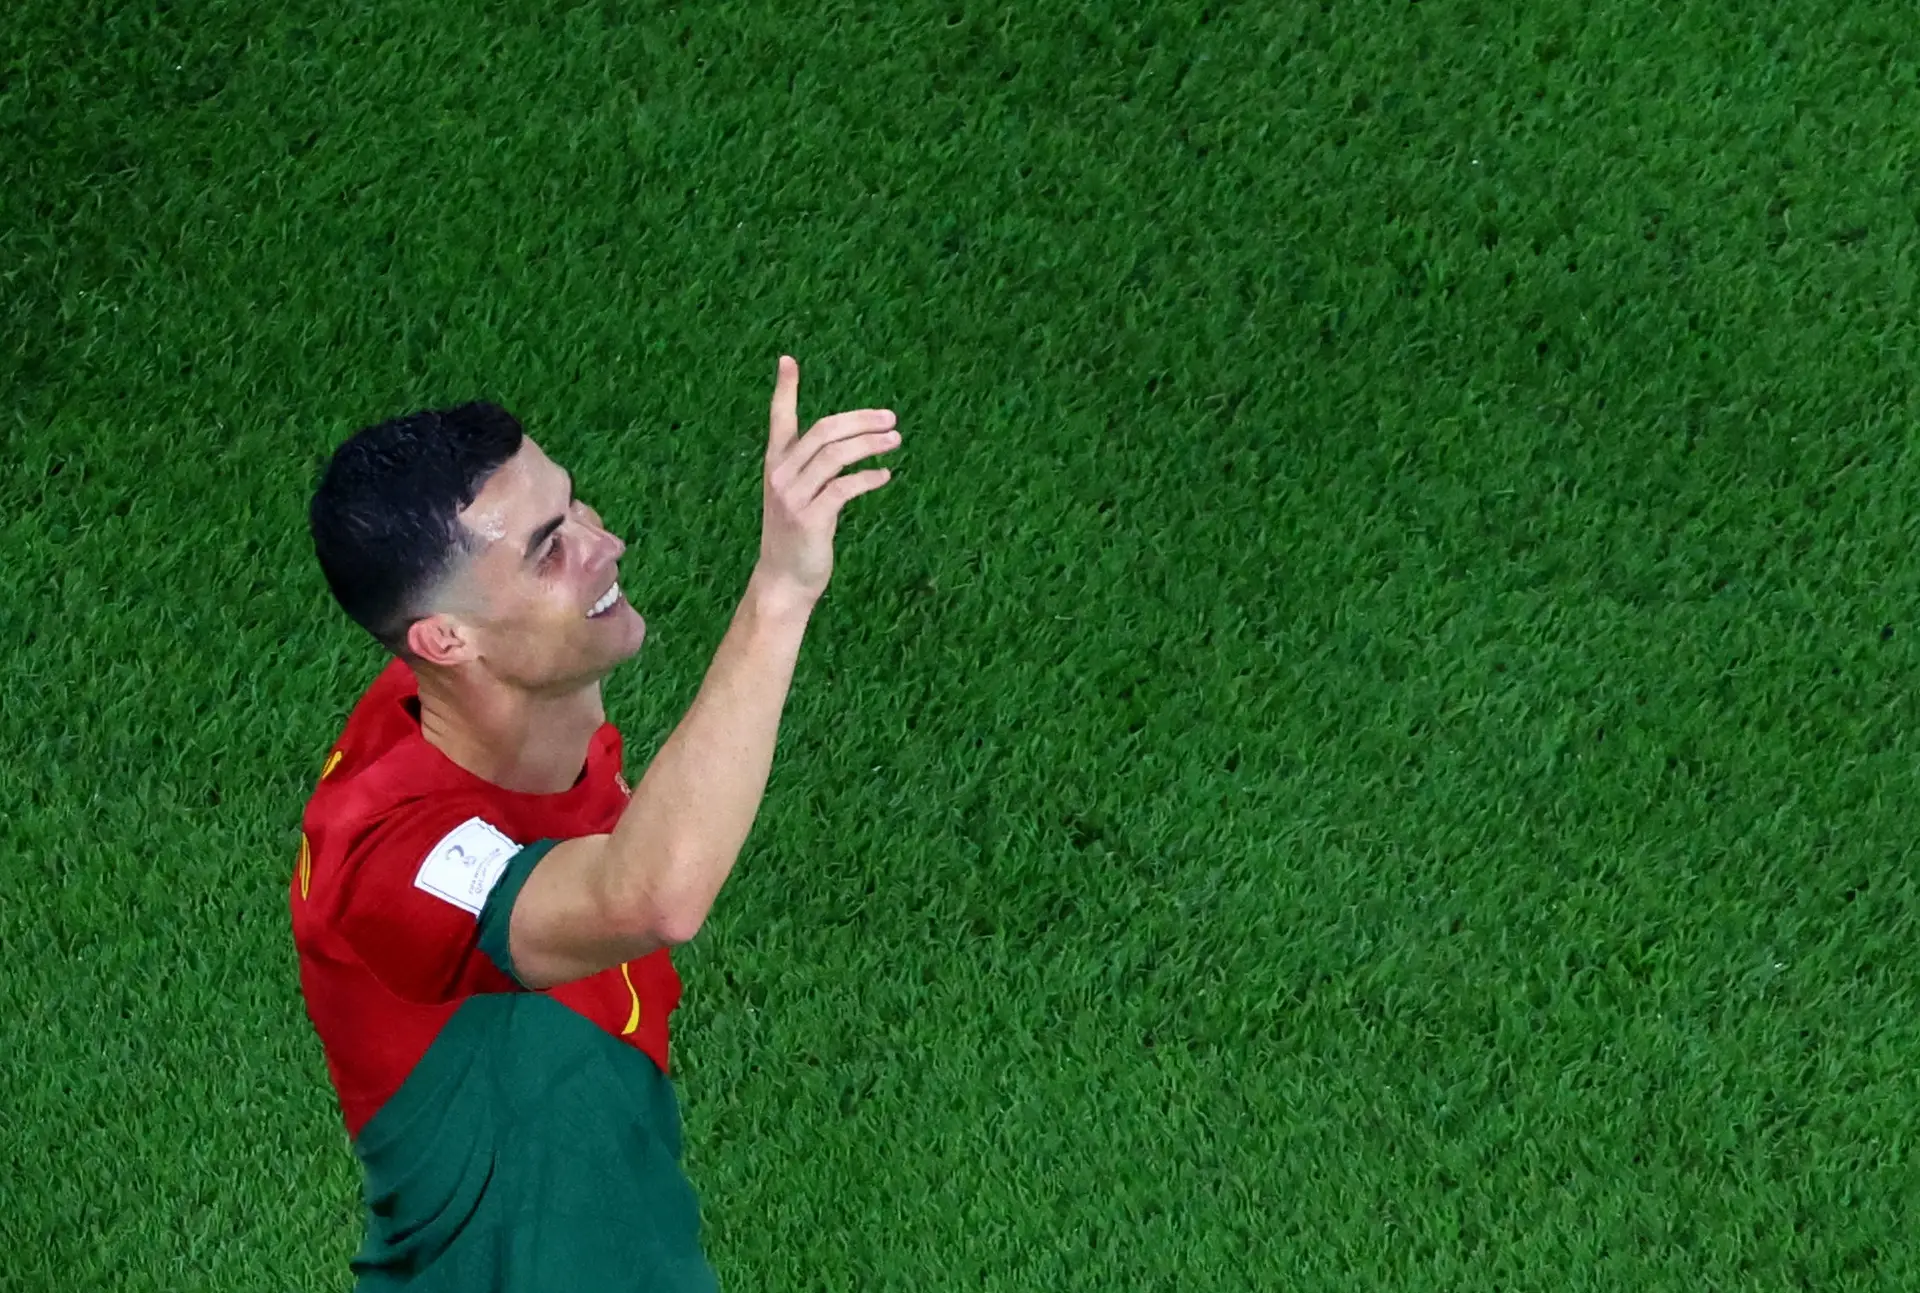 Cristiano Ronaldo mostra-se “orgulhoso” em representar Portugal após bater mais um recorde